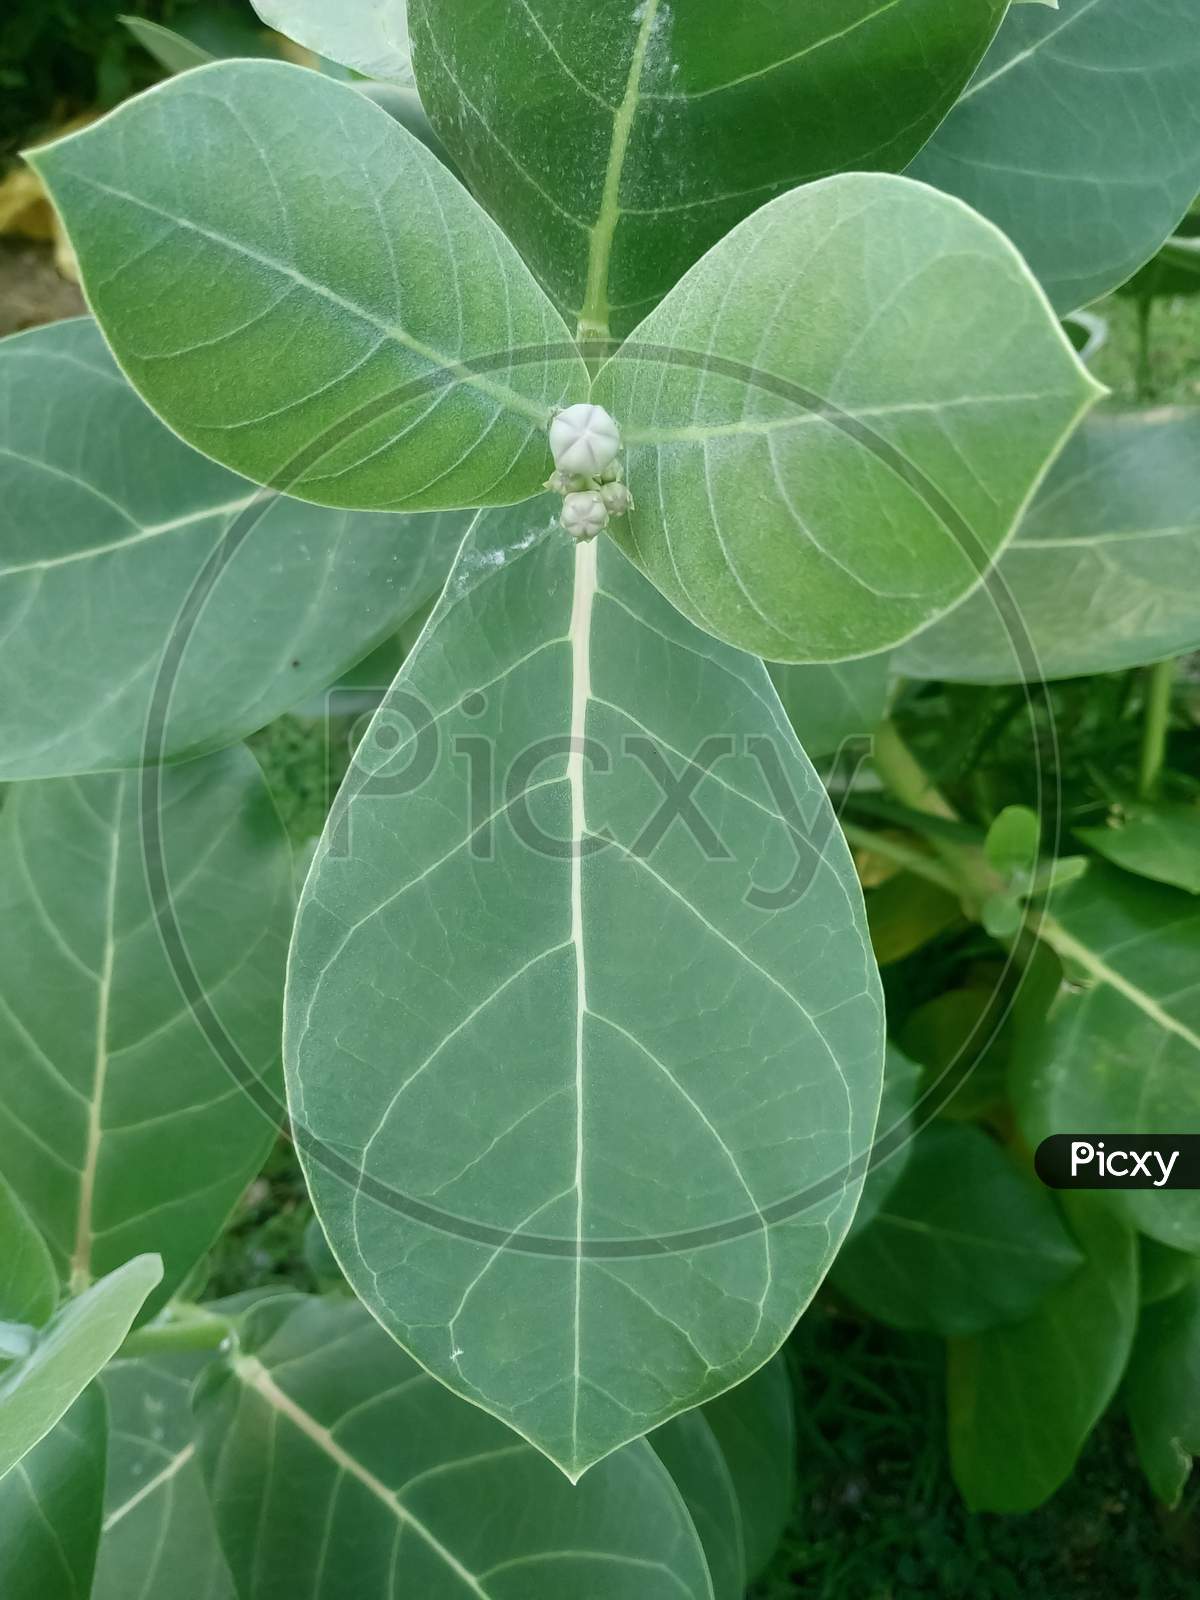 Calotrips Gigantea or Arka Leaf/Leaves (Indian name) Beautiful Green Leaves/Leafs.